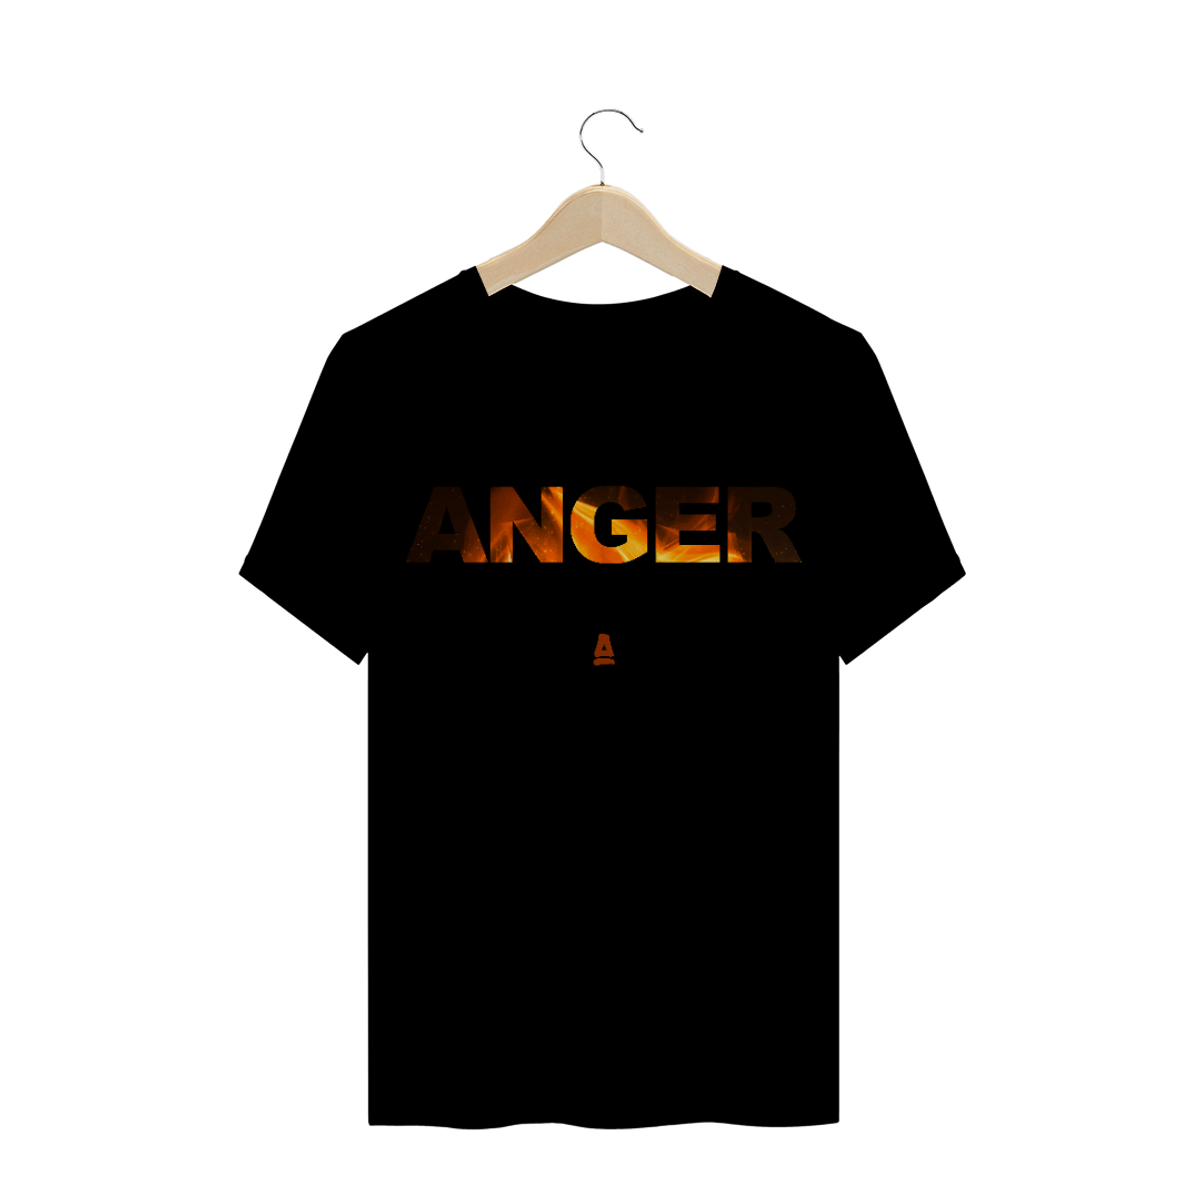 Nome do produto: ANGER